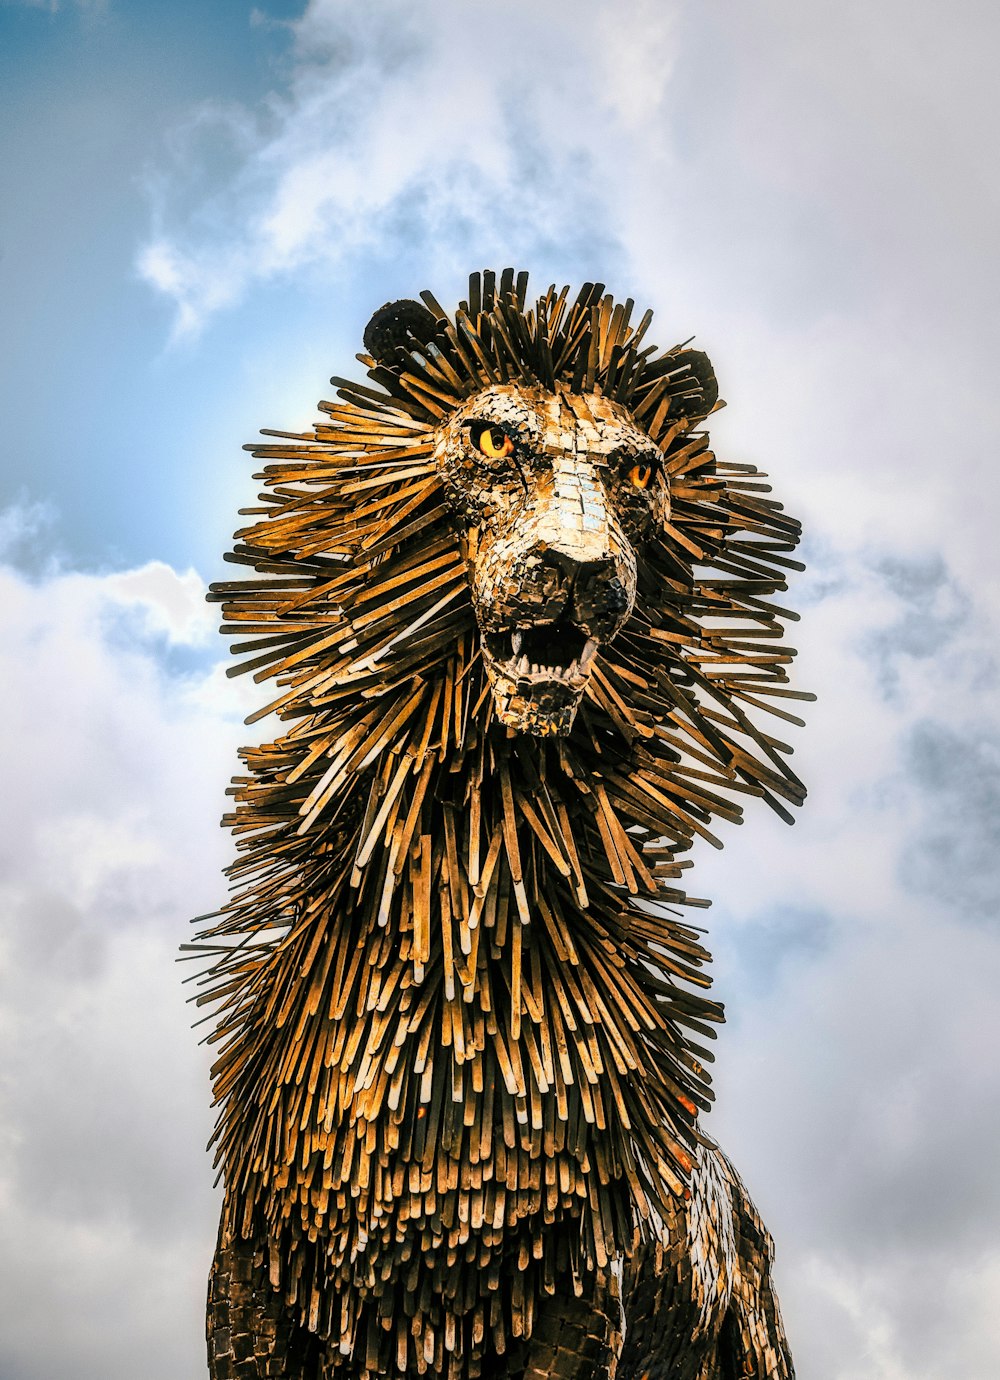 estatua de cabeza de león dorada y negra bajo nubes blancas y cielo azul durante el día